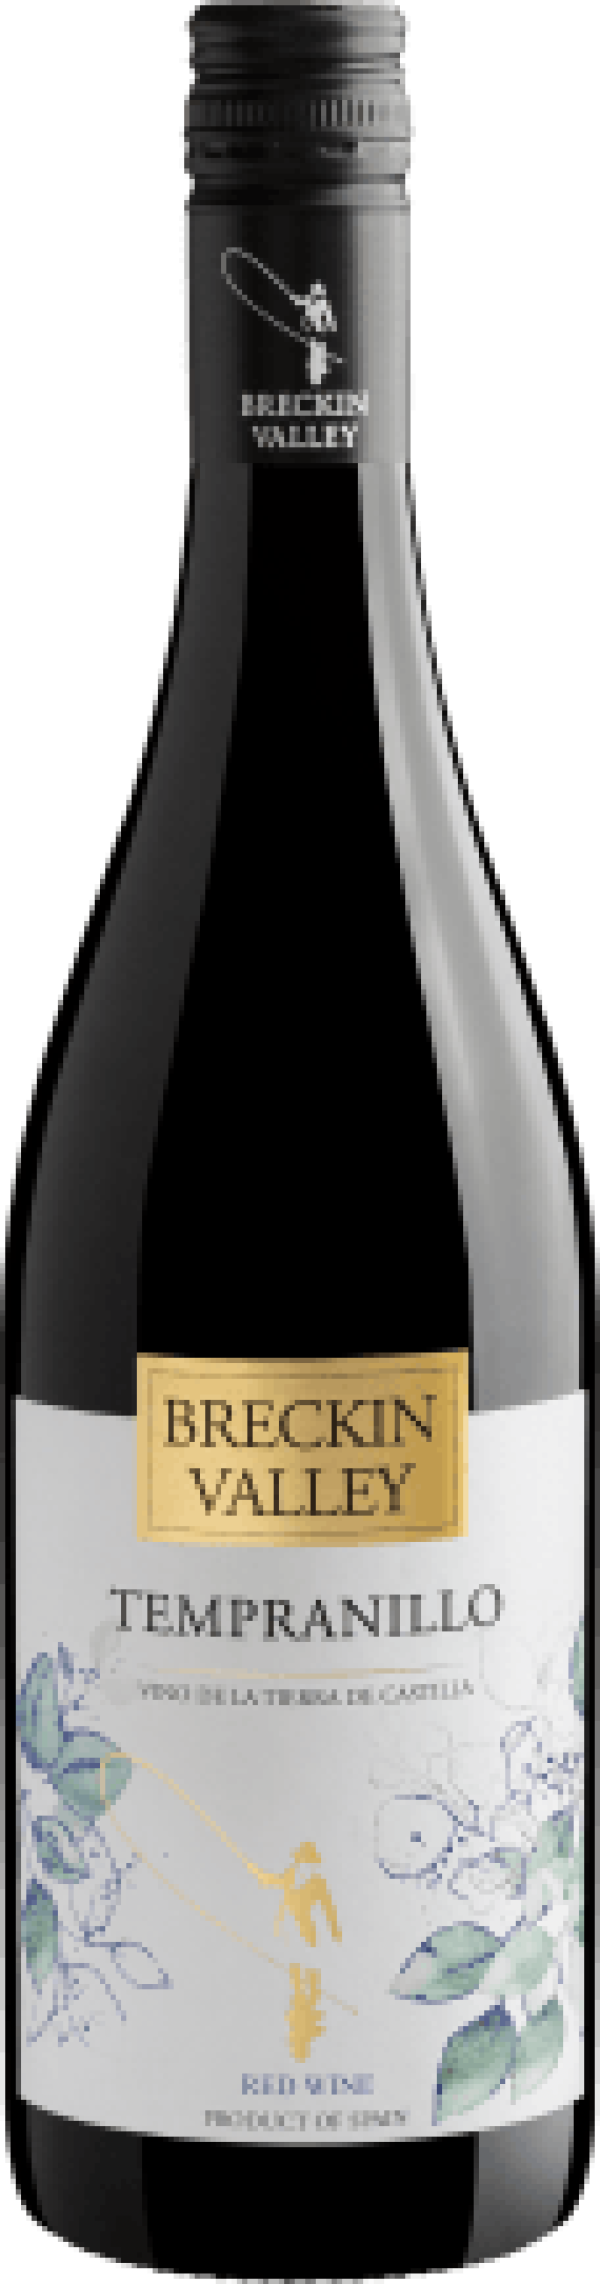 Breckin Valley Tempranillo Vino de la Tierra de Castilla